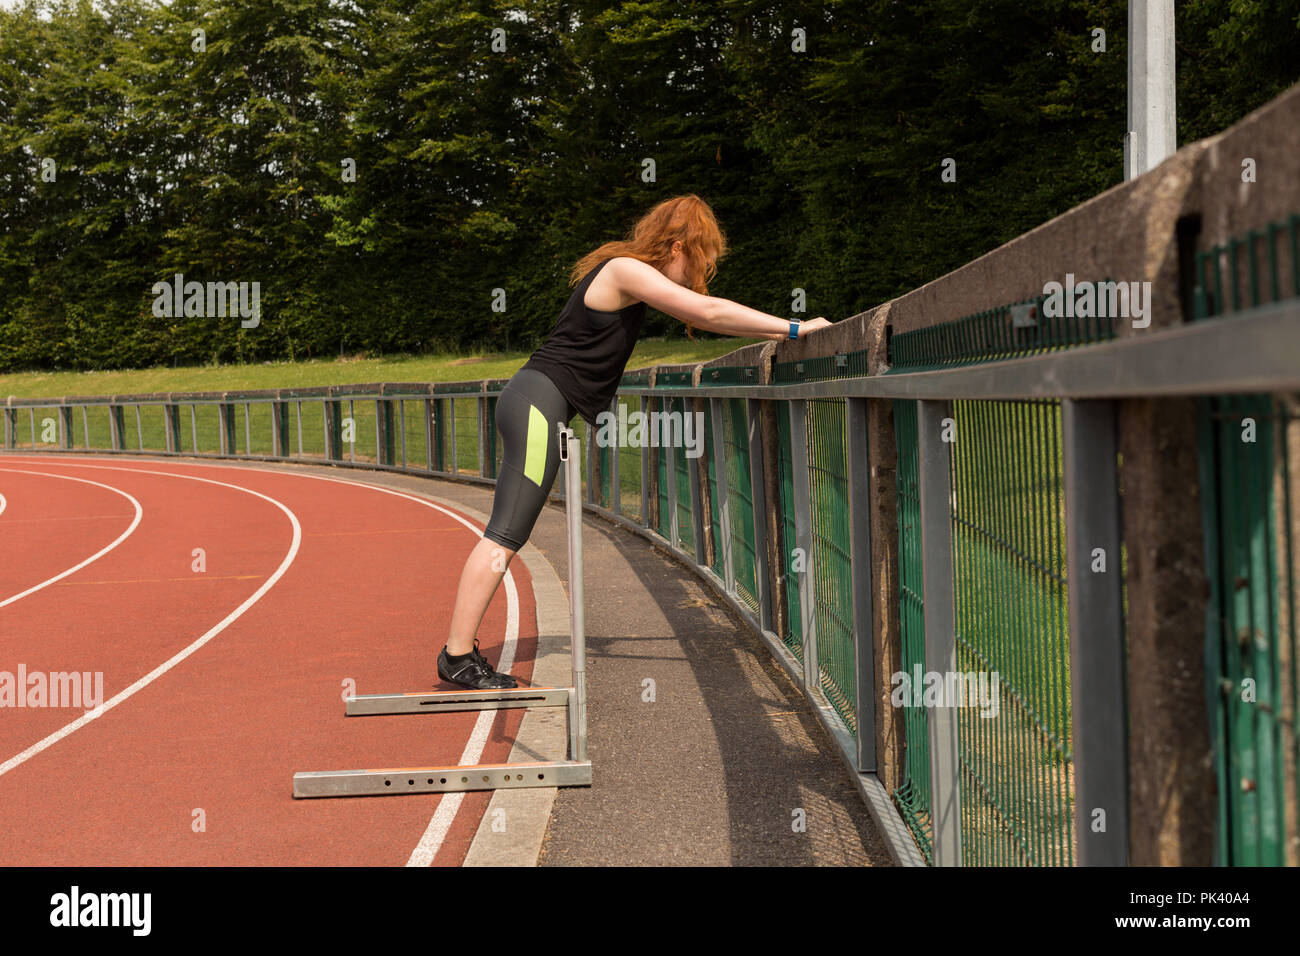 Female athlete exercising on railing at sports track Stock Photo